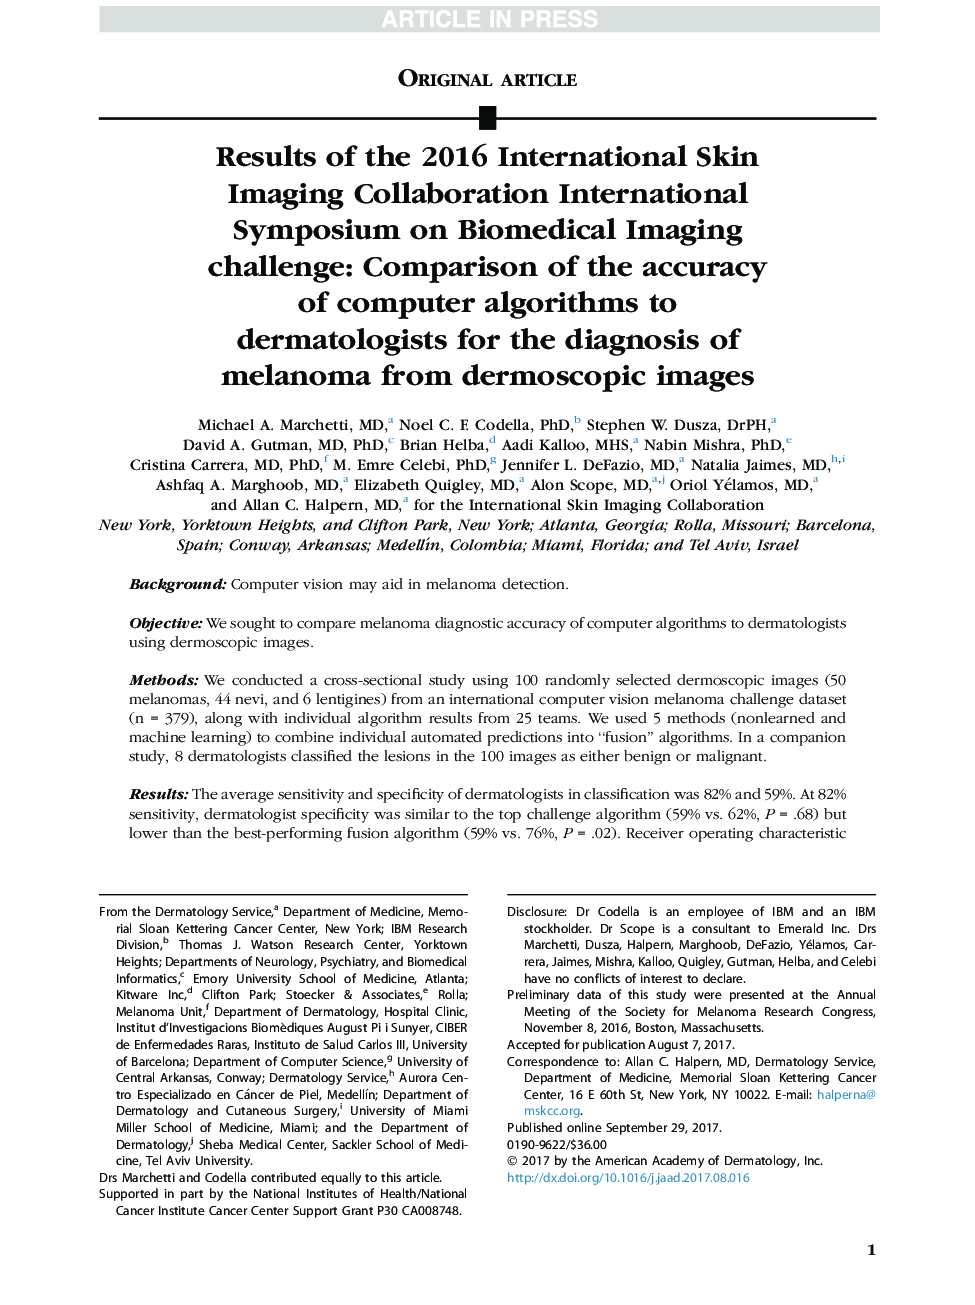 نتایج همایش بین المللی همکاری تصویربرداری پوست 2016 در چالش تصویربرداری بیومدیکال: مقایسه دقت الگوریتم های کامپیوتری برای متخصصین پوست برای تشخیص ملانوما از تصاویر درماتوسکوپی 